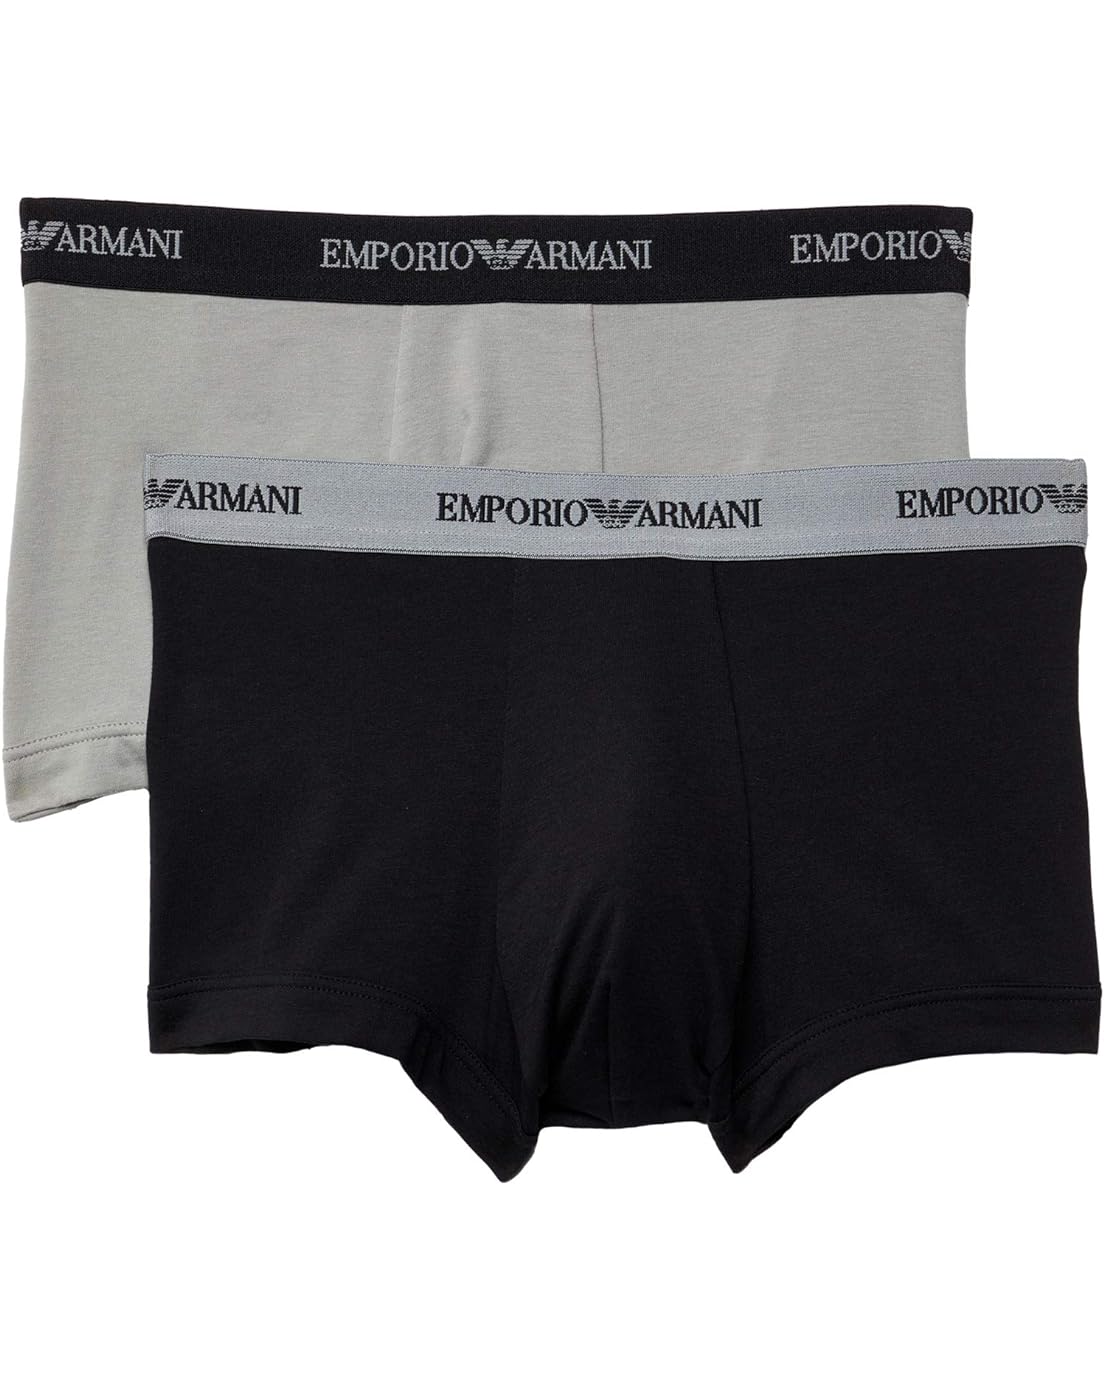 엠포리오아르마니 Emporio Armani 2-Pack Stretch Cotton Trunk